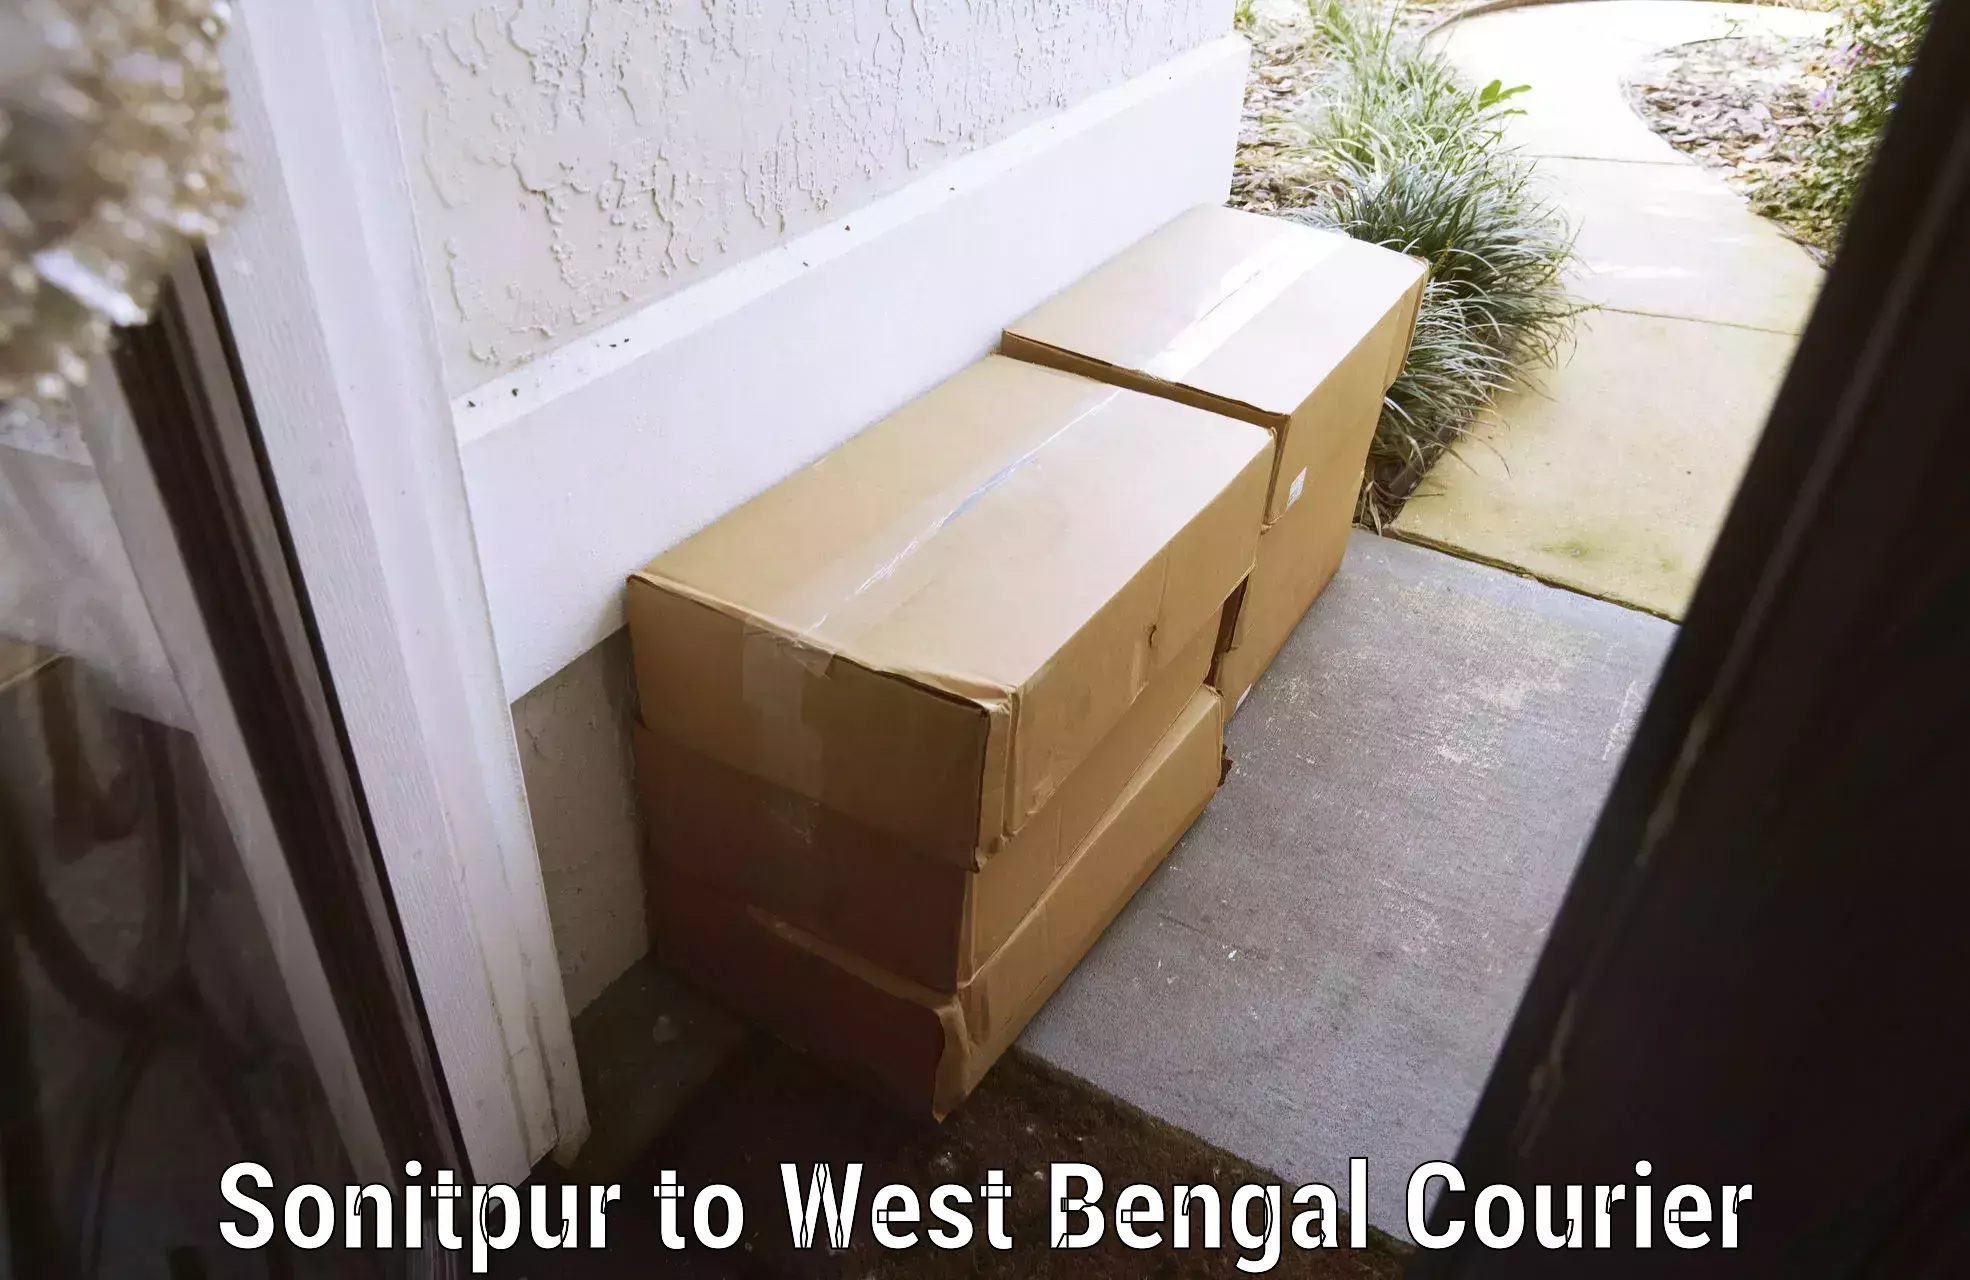 Baggage delivery estimate Sonitpur to Jhalda